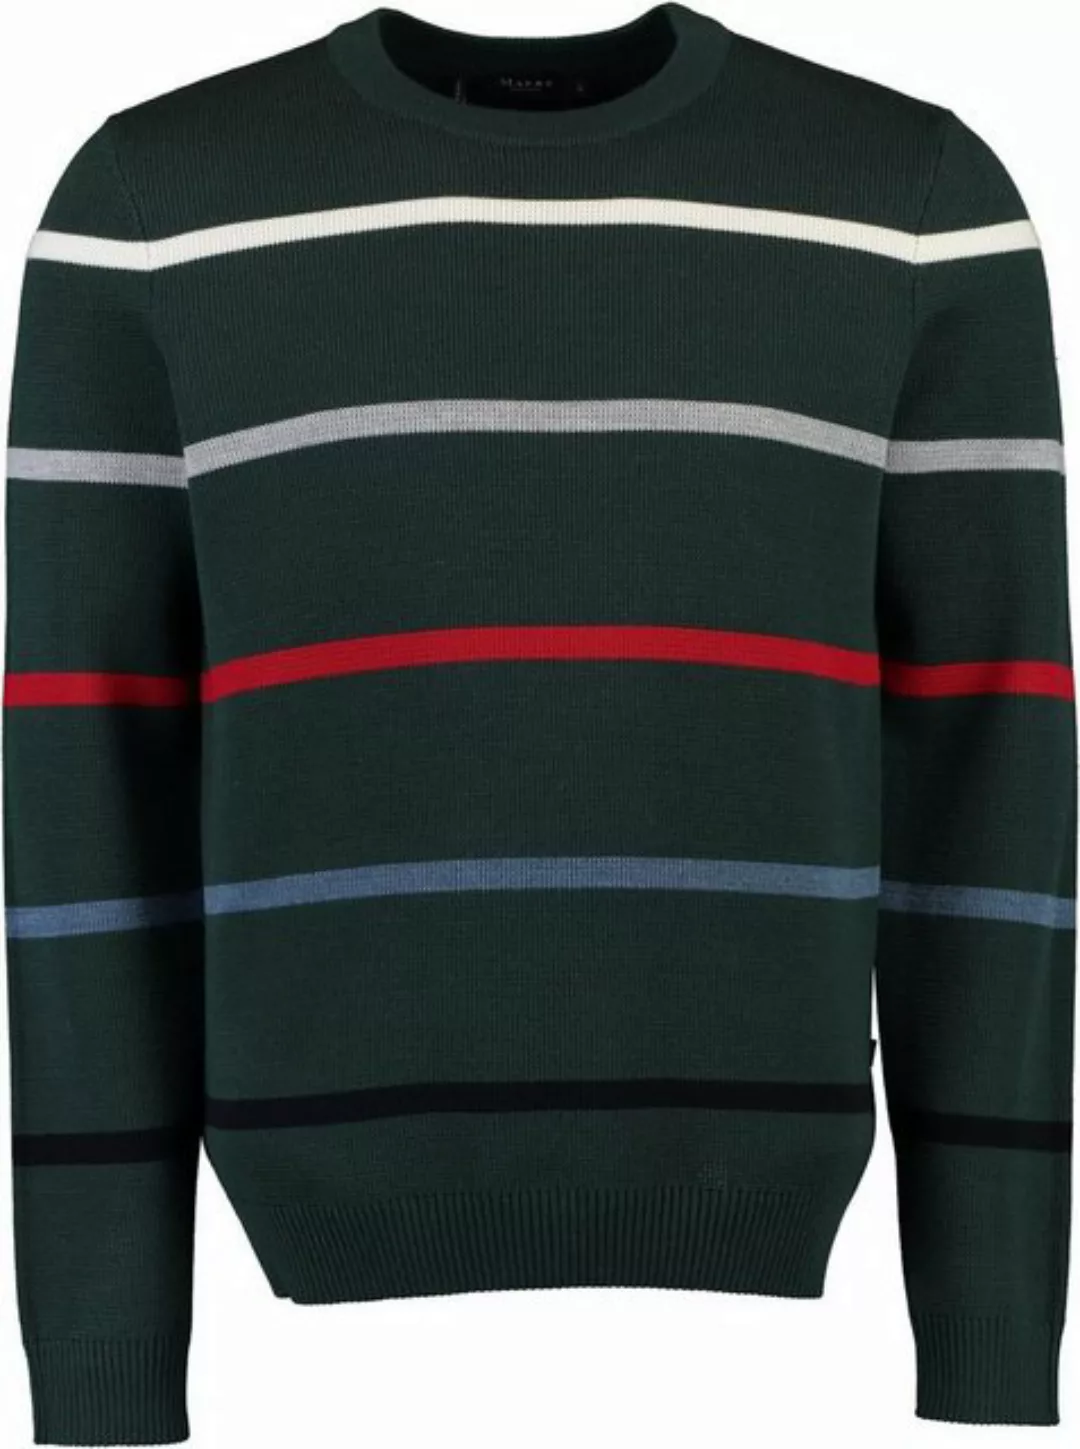 MAERZ Muenchen Strickpullover MAERZ Rundhals Pullover grün gestreift günstig online kaufen